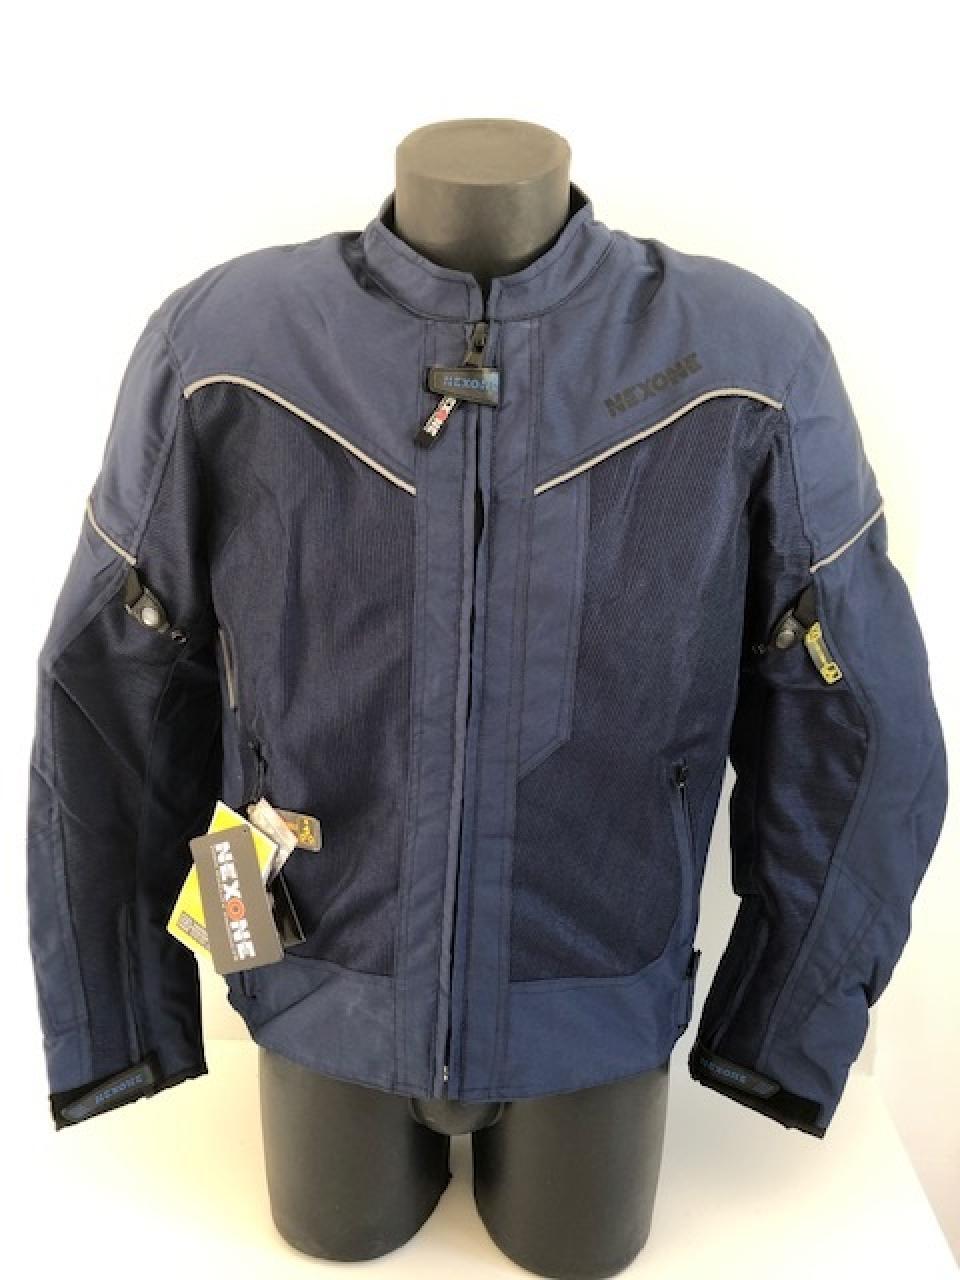 Blouson veste pour moto Homme Nexone Eté Flavio bleu Textile  Taille XL homologué CE